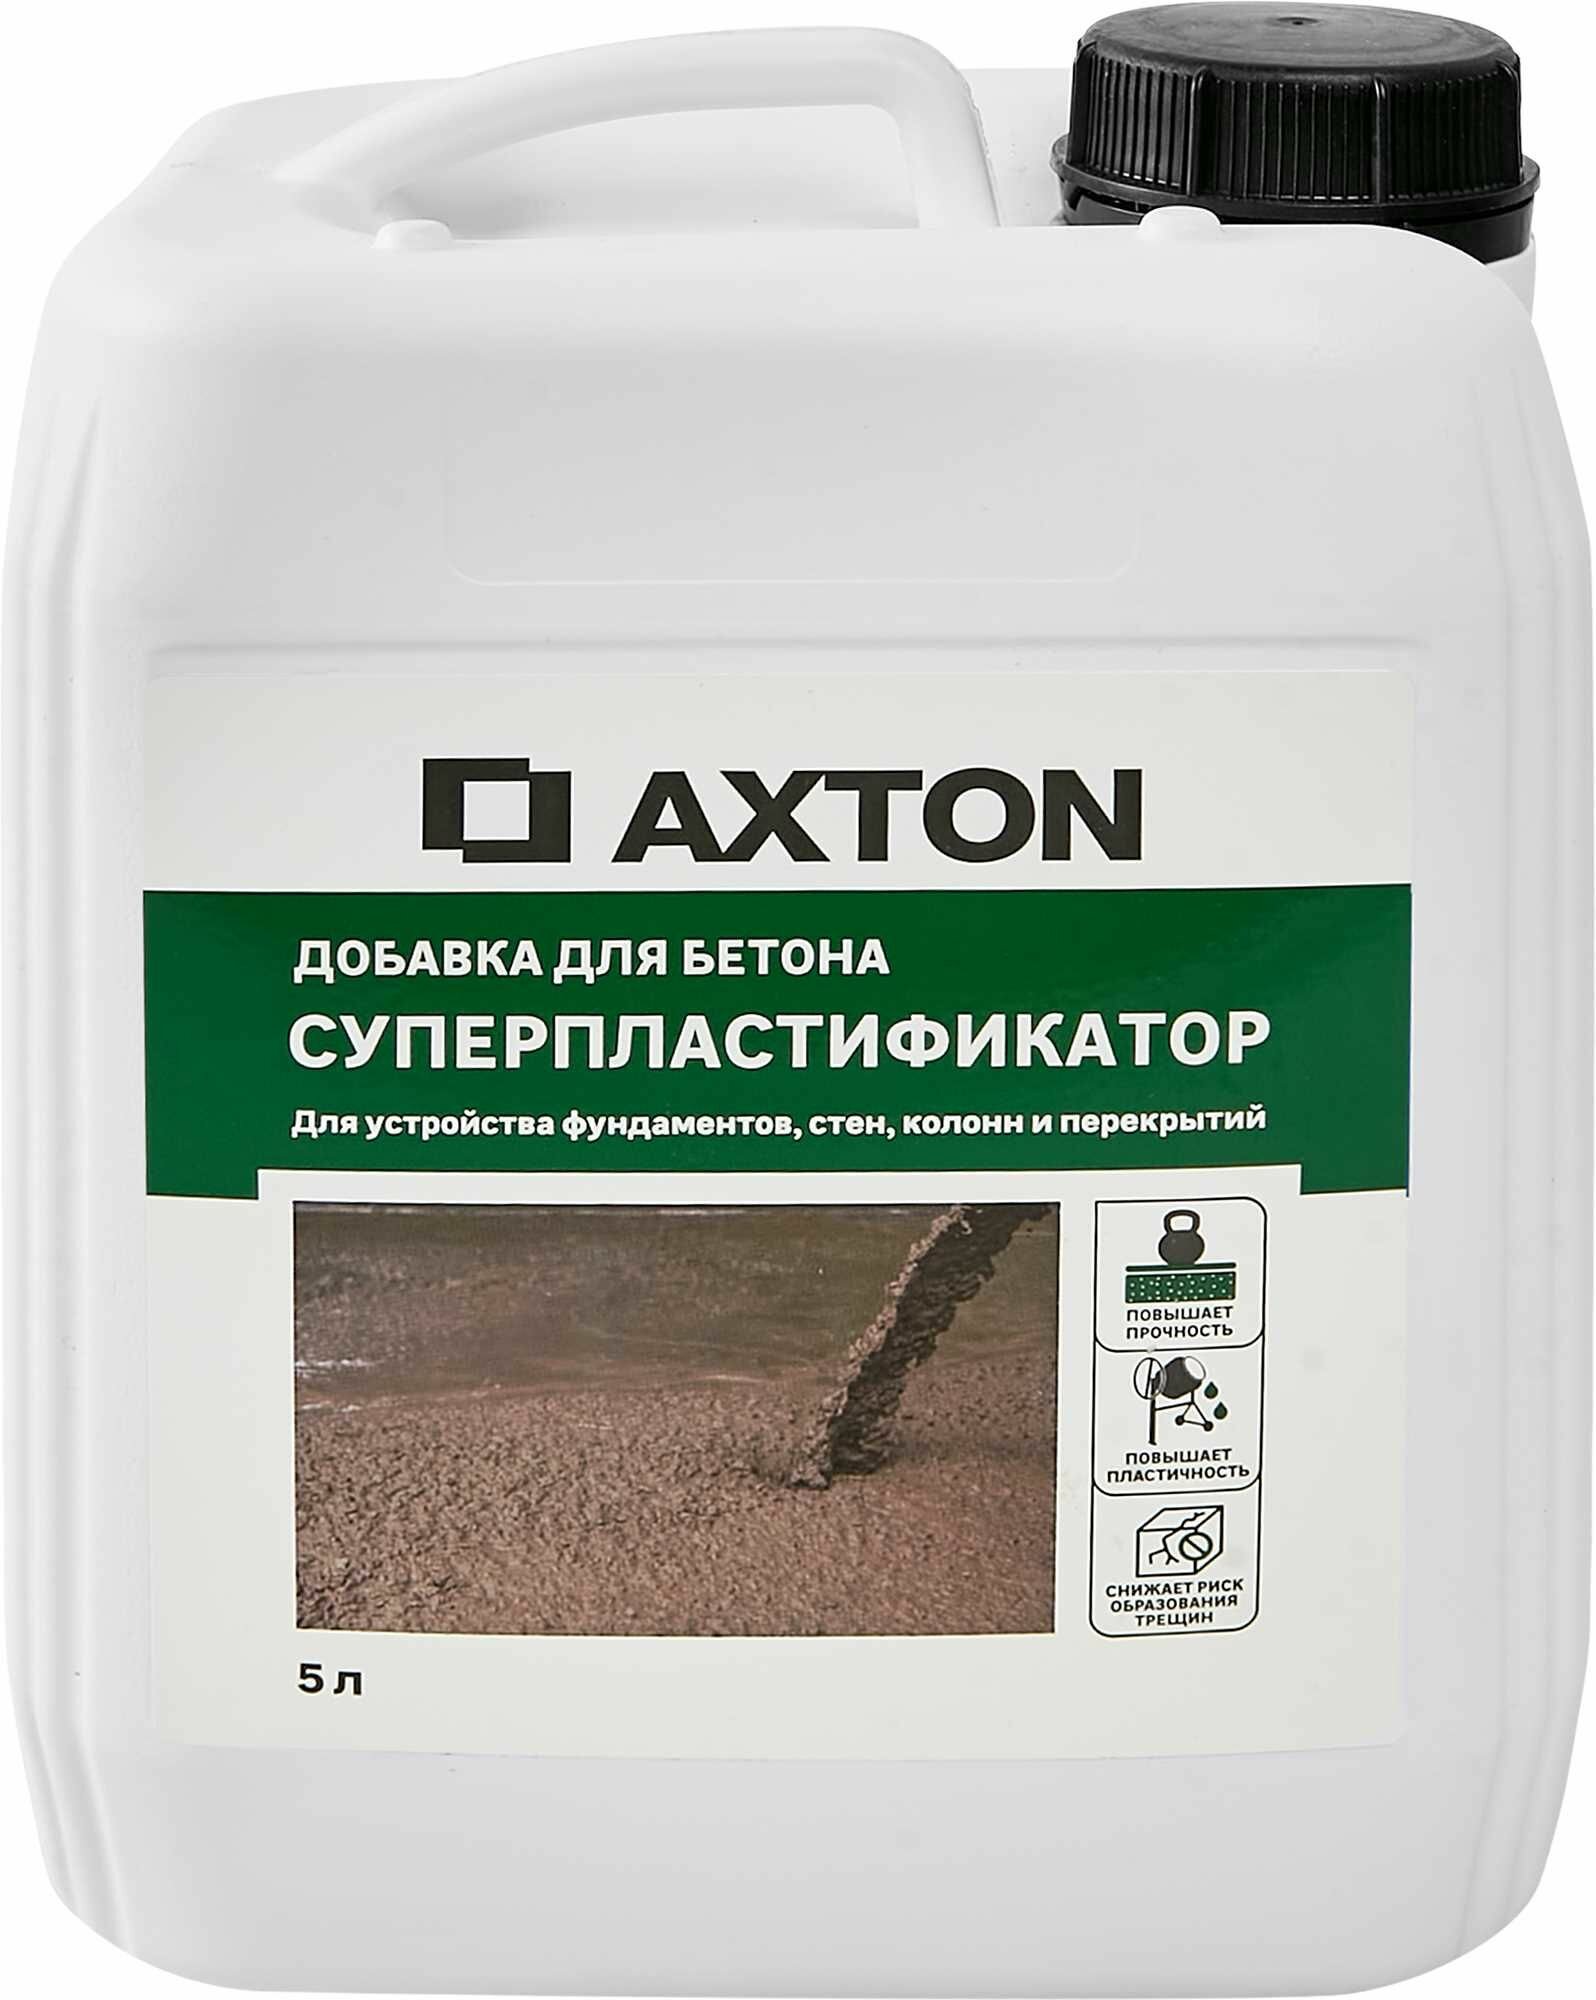 Суперпластификатор Axton 5 л